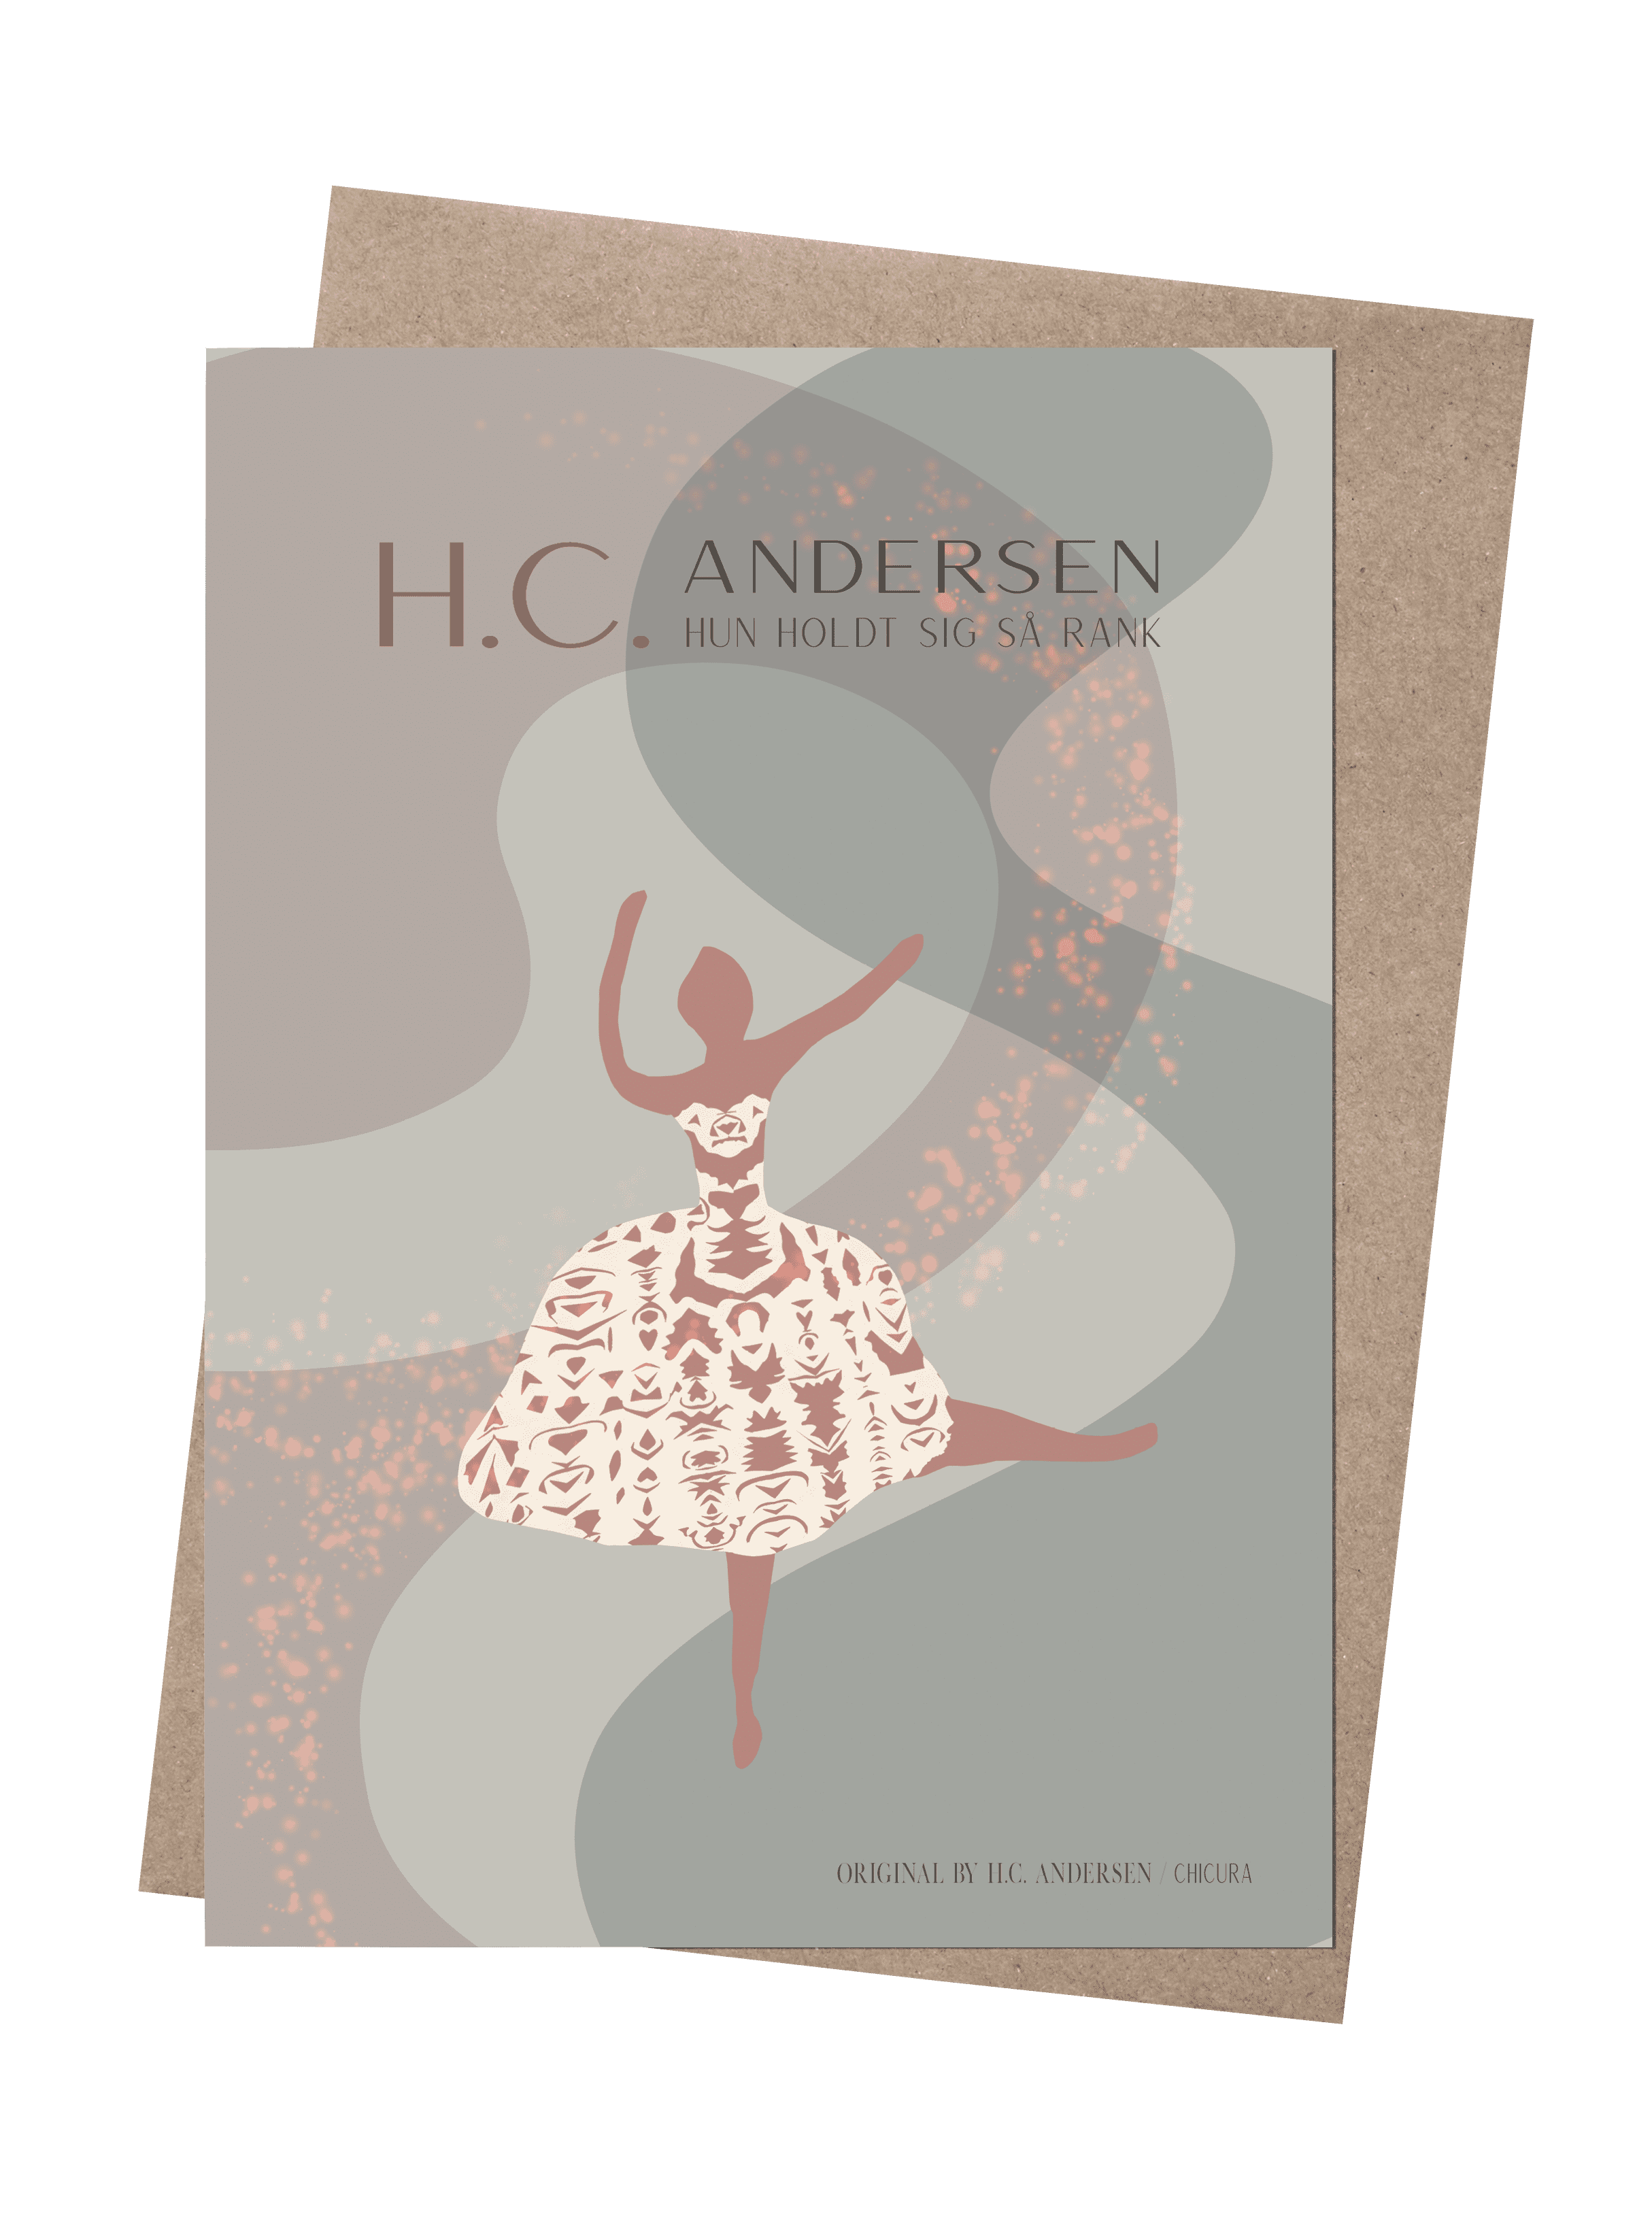 H.C. Andersen - Den Lille Danserinde - ChiCura Copenhagen DK -